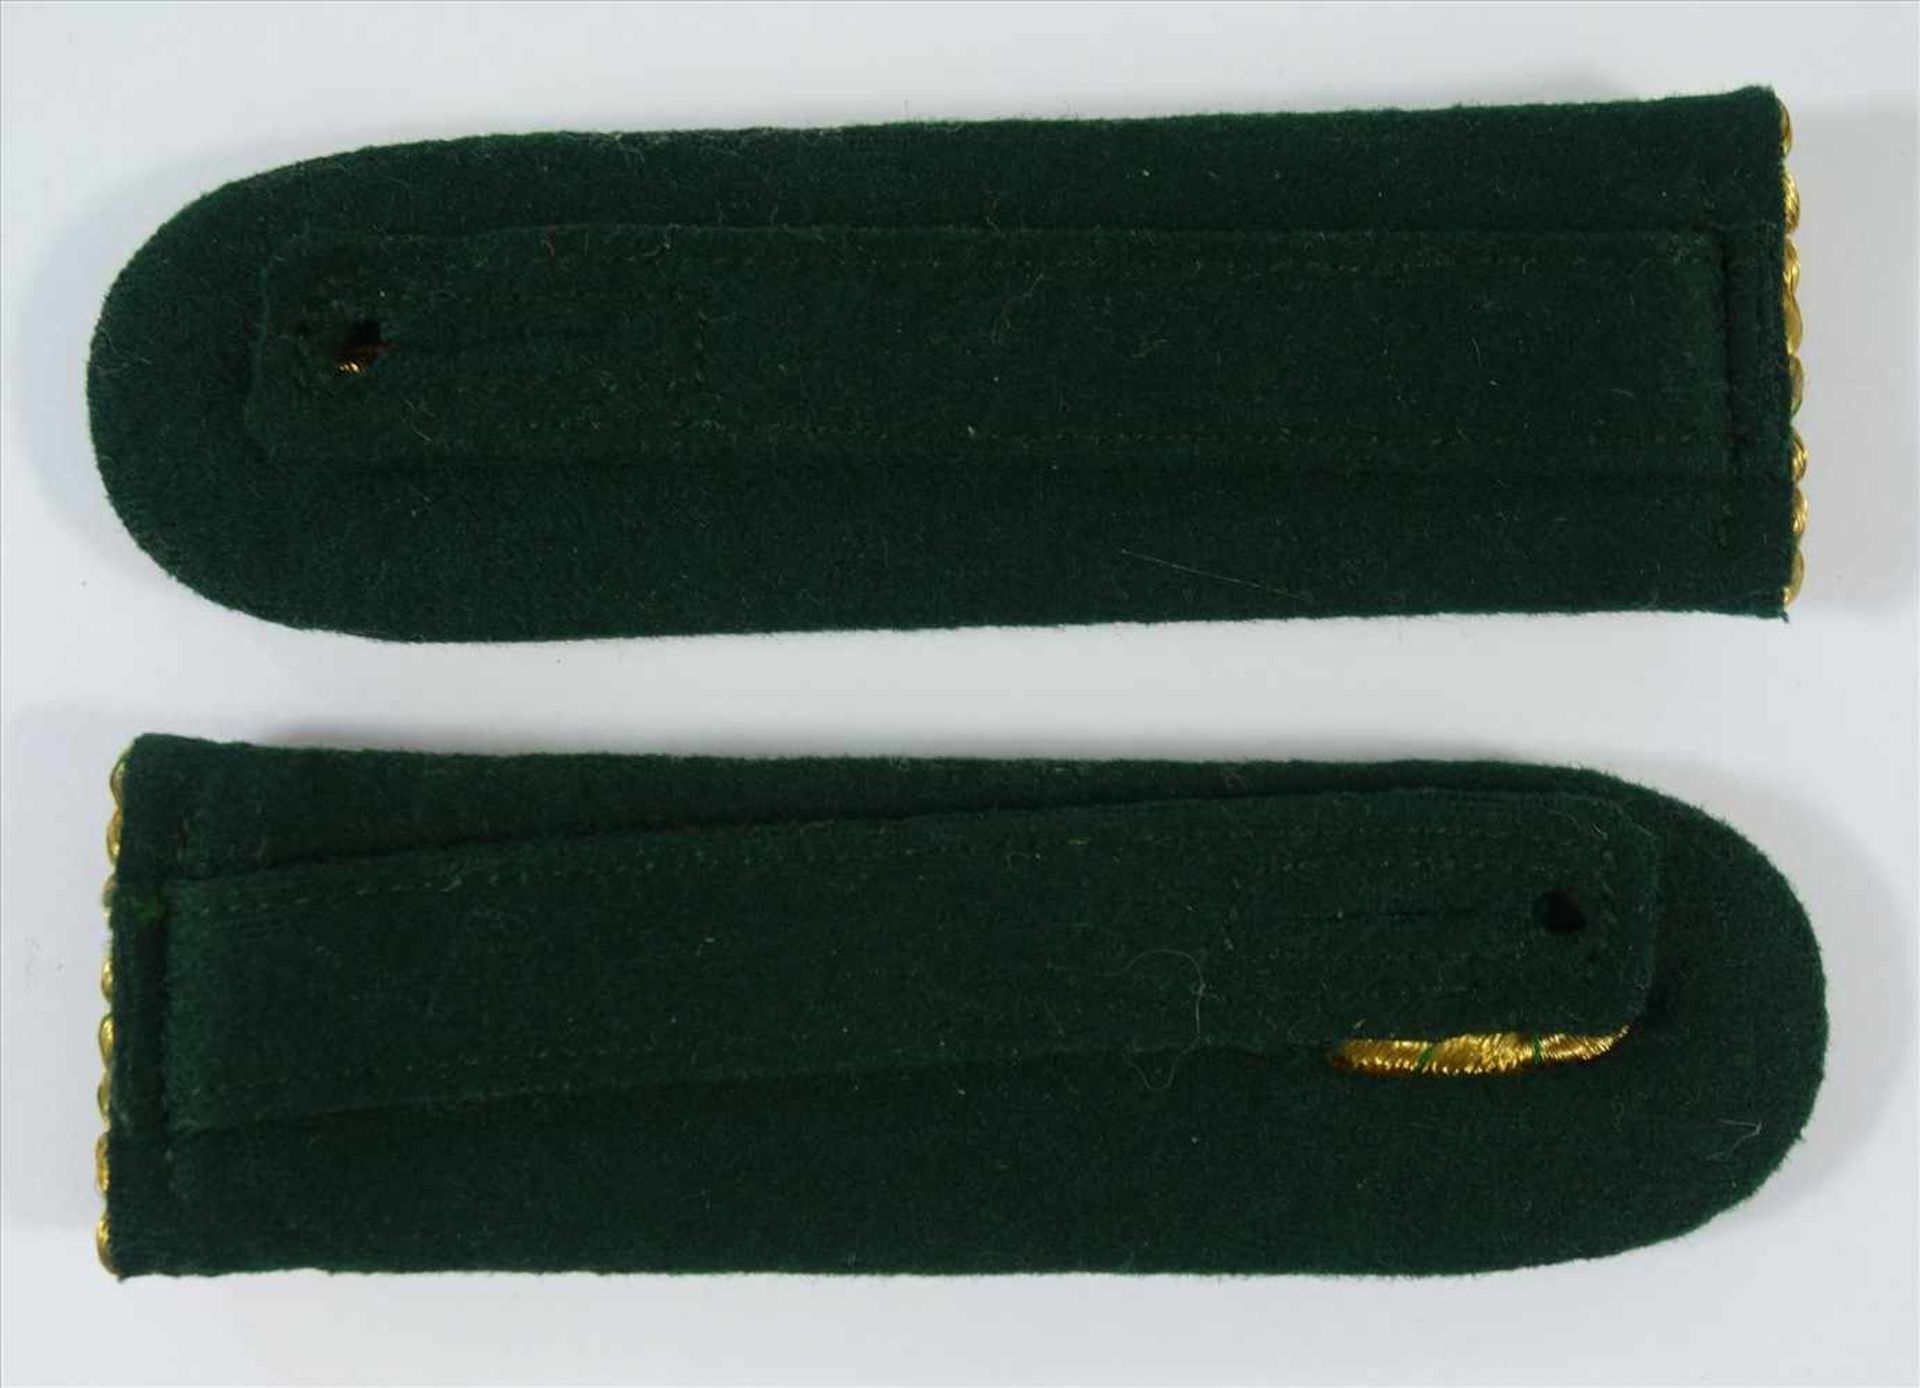 Paar Schulterklappen und Soldatenporträtffoto, Preußen, gold mit grünen Bändern, 2 Sterne, bekröntes - Bild 2 aus 2